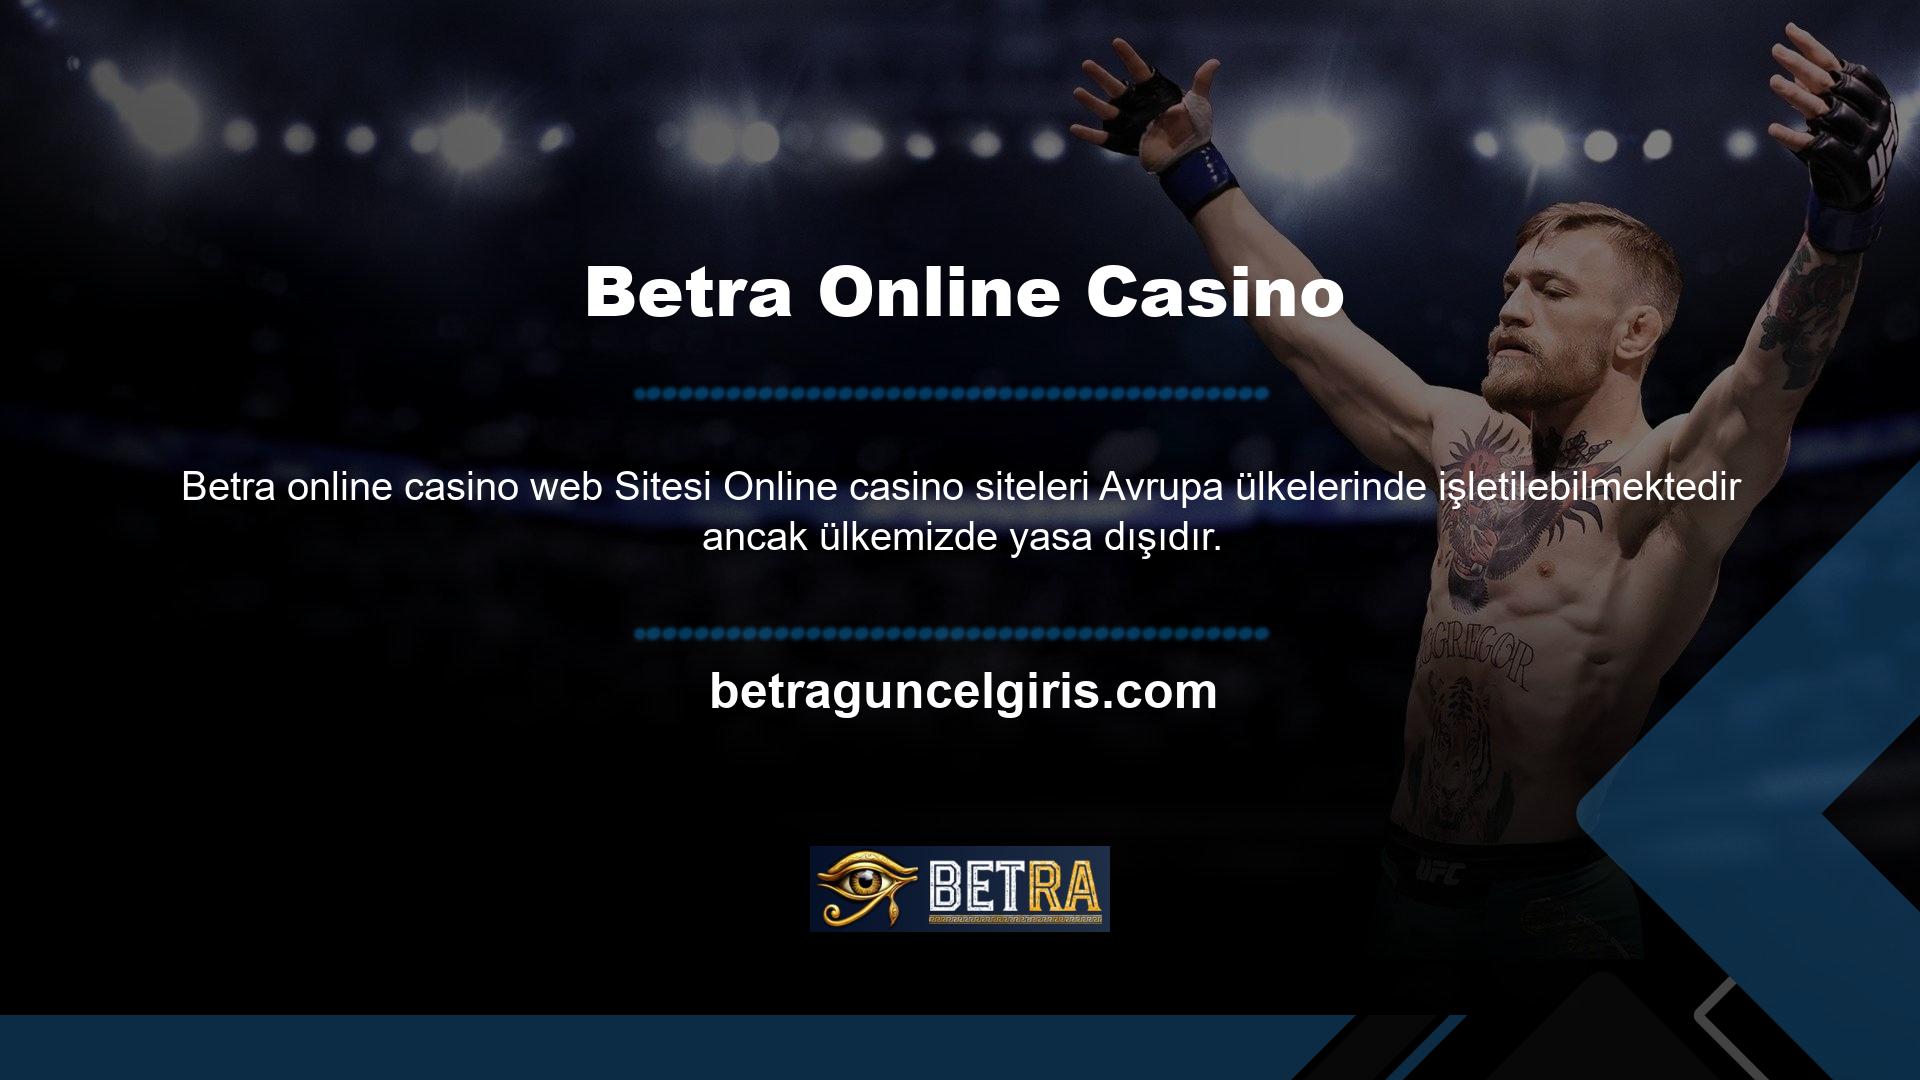 Ülkemizde de online casino siteleri kullanılmaktadır